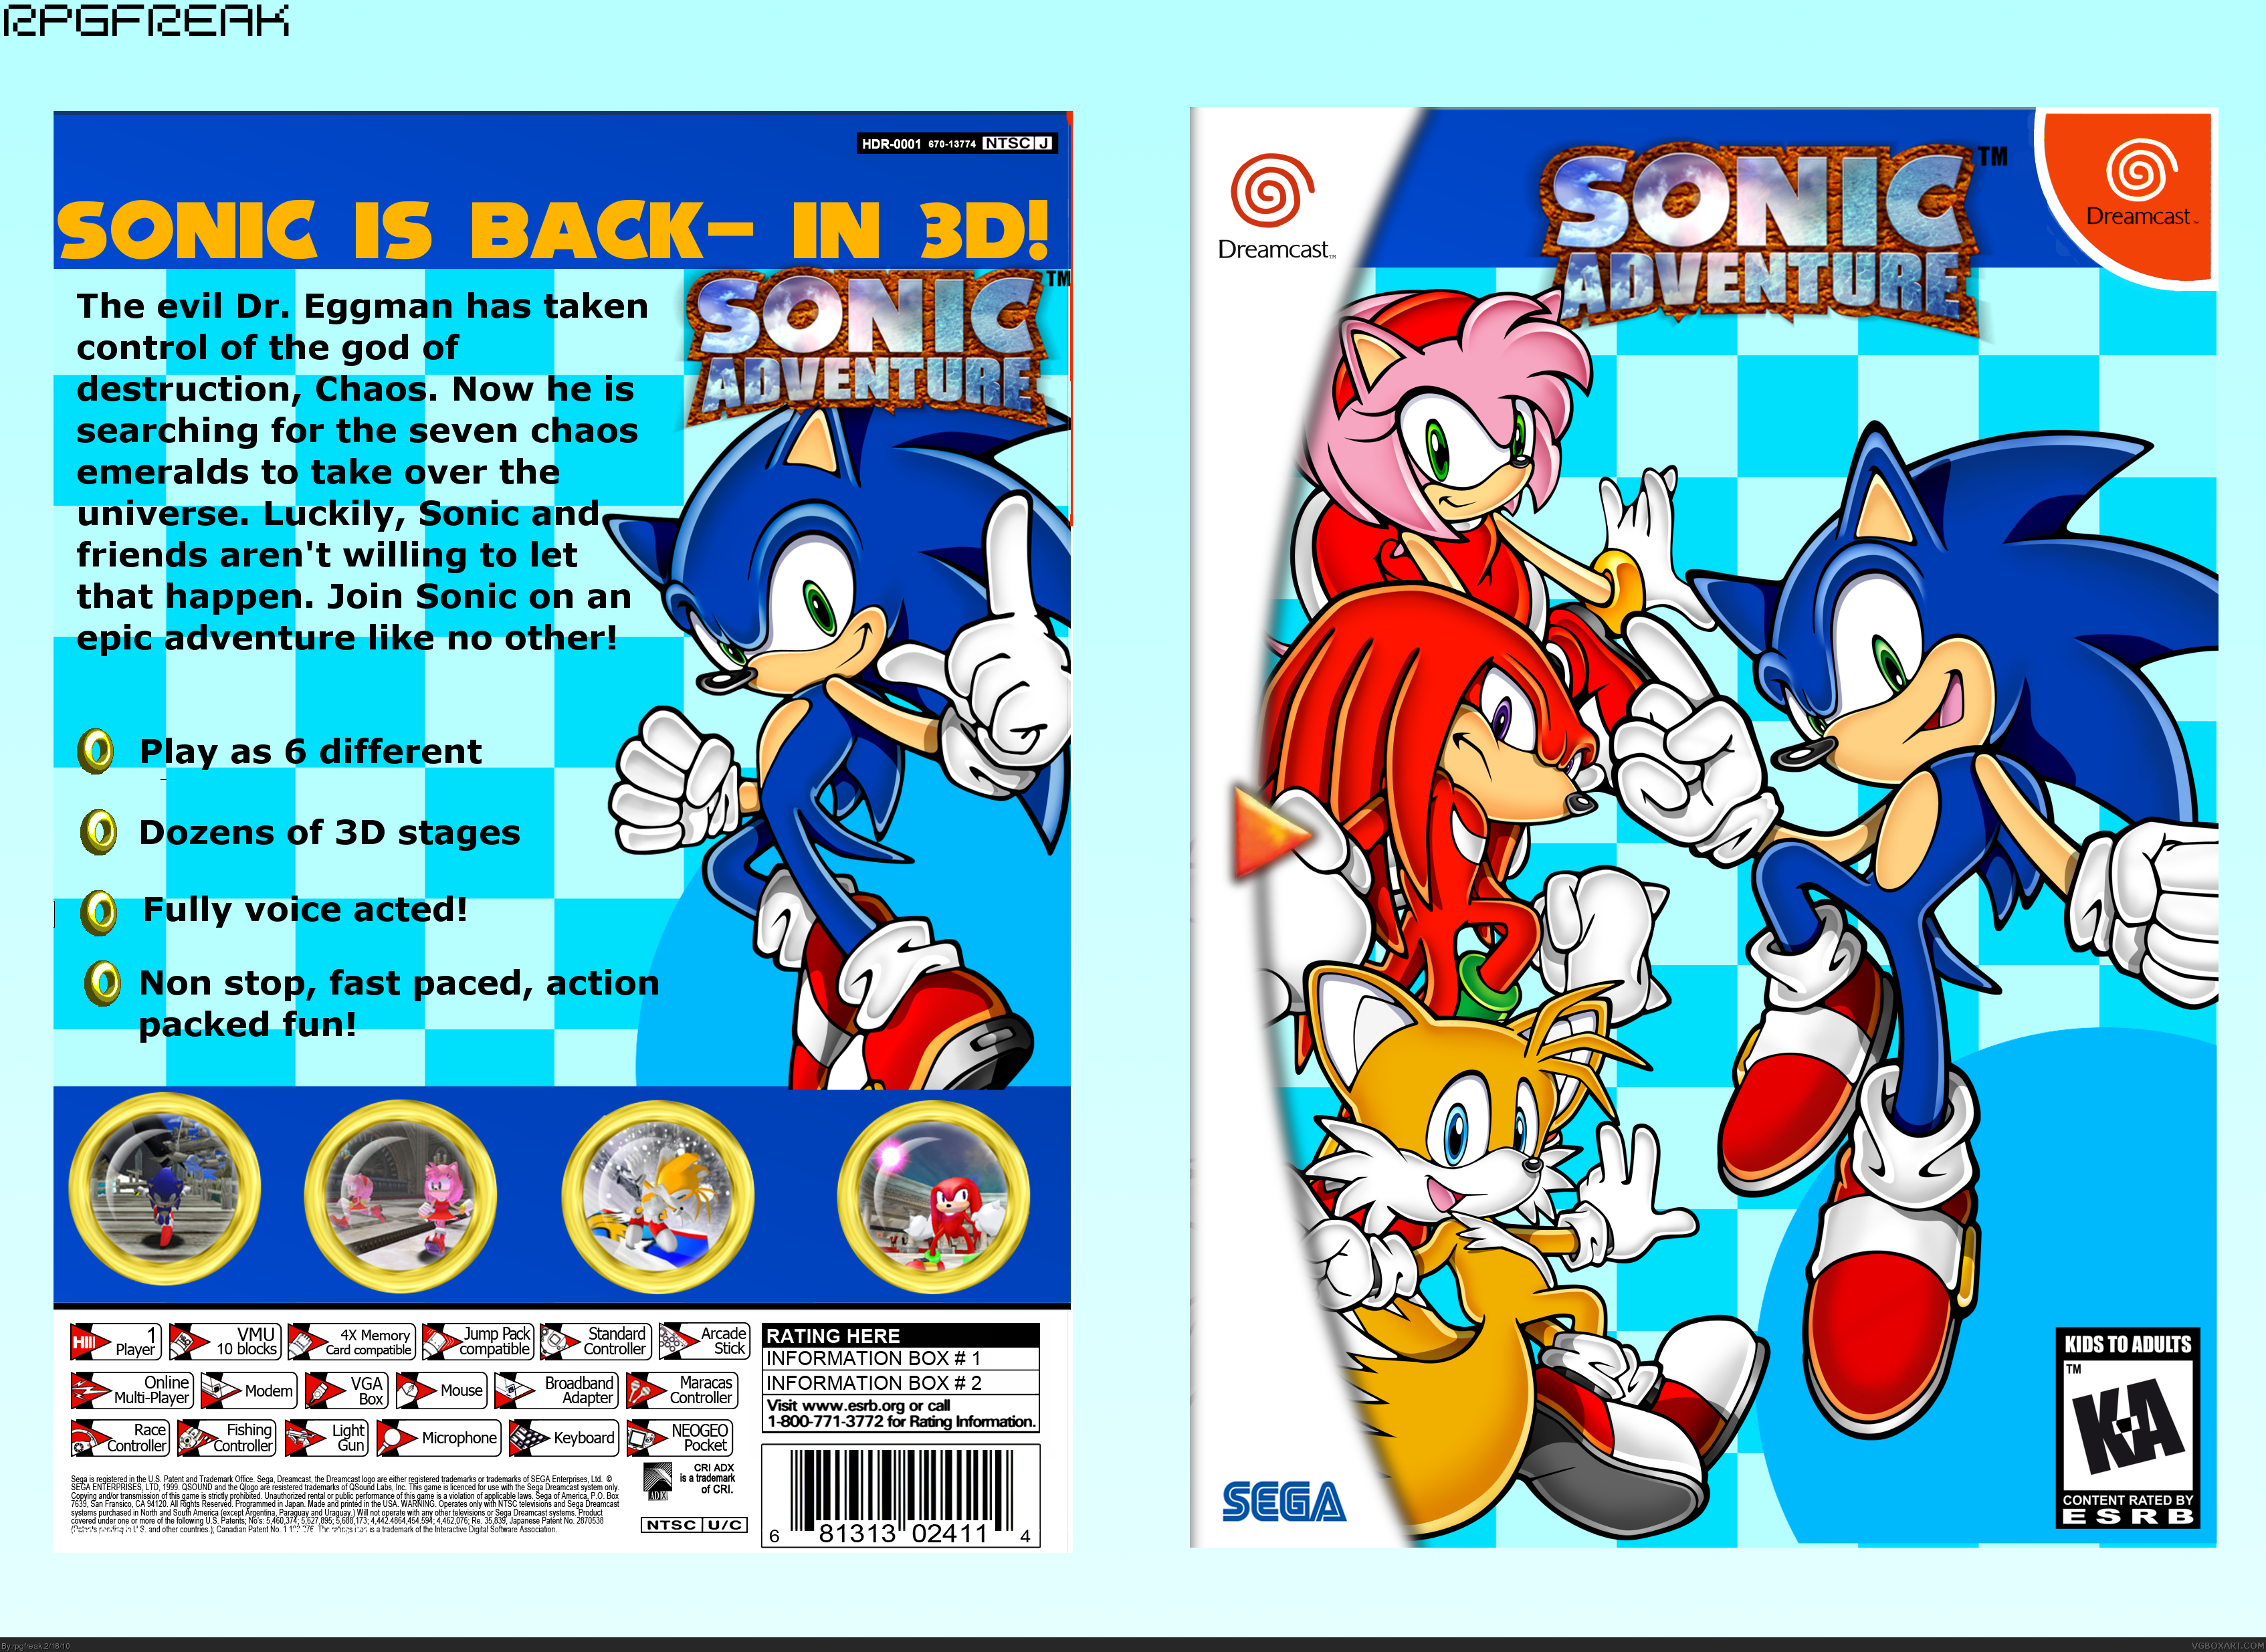 Sonic Adventure 2 обложка Дримкаст. Sonic Adventure Dreamcast обложка. Соник Дримкаст арт. Sonic Adventure 2 Dreamcast Box. Dreamcast roms sonic